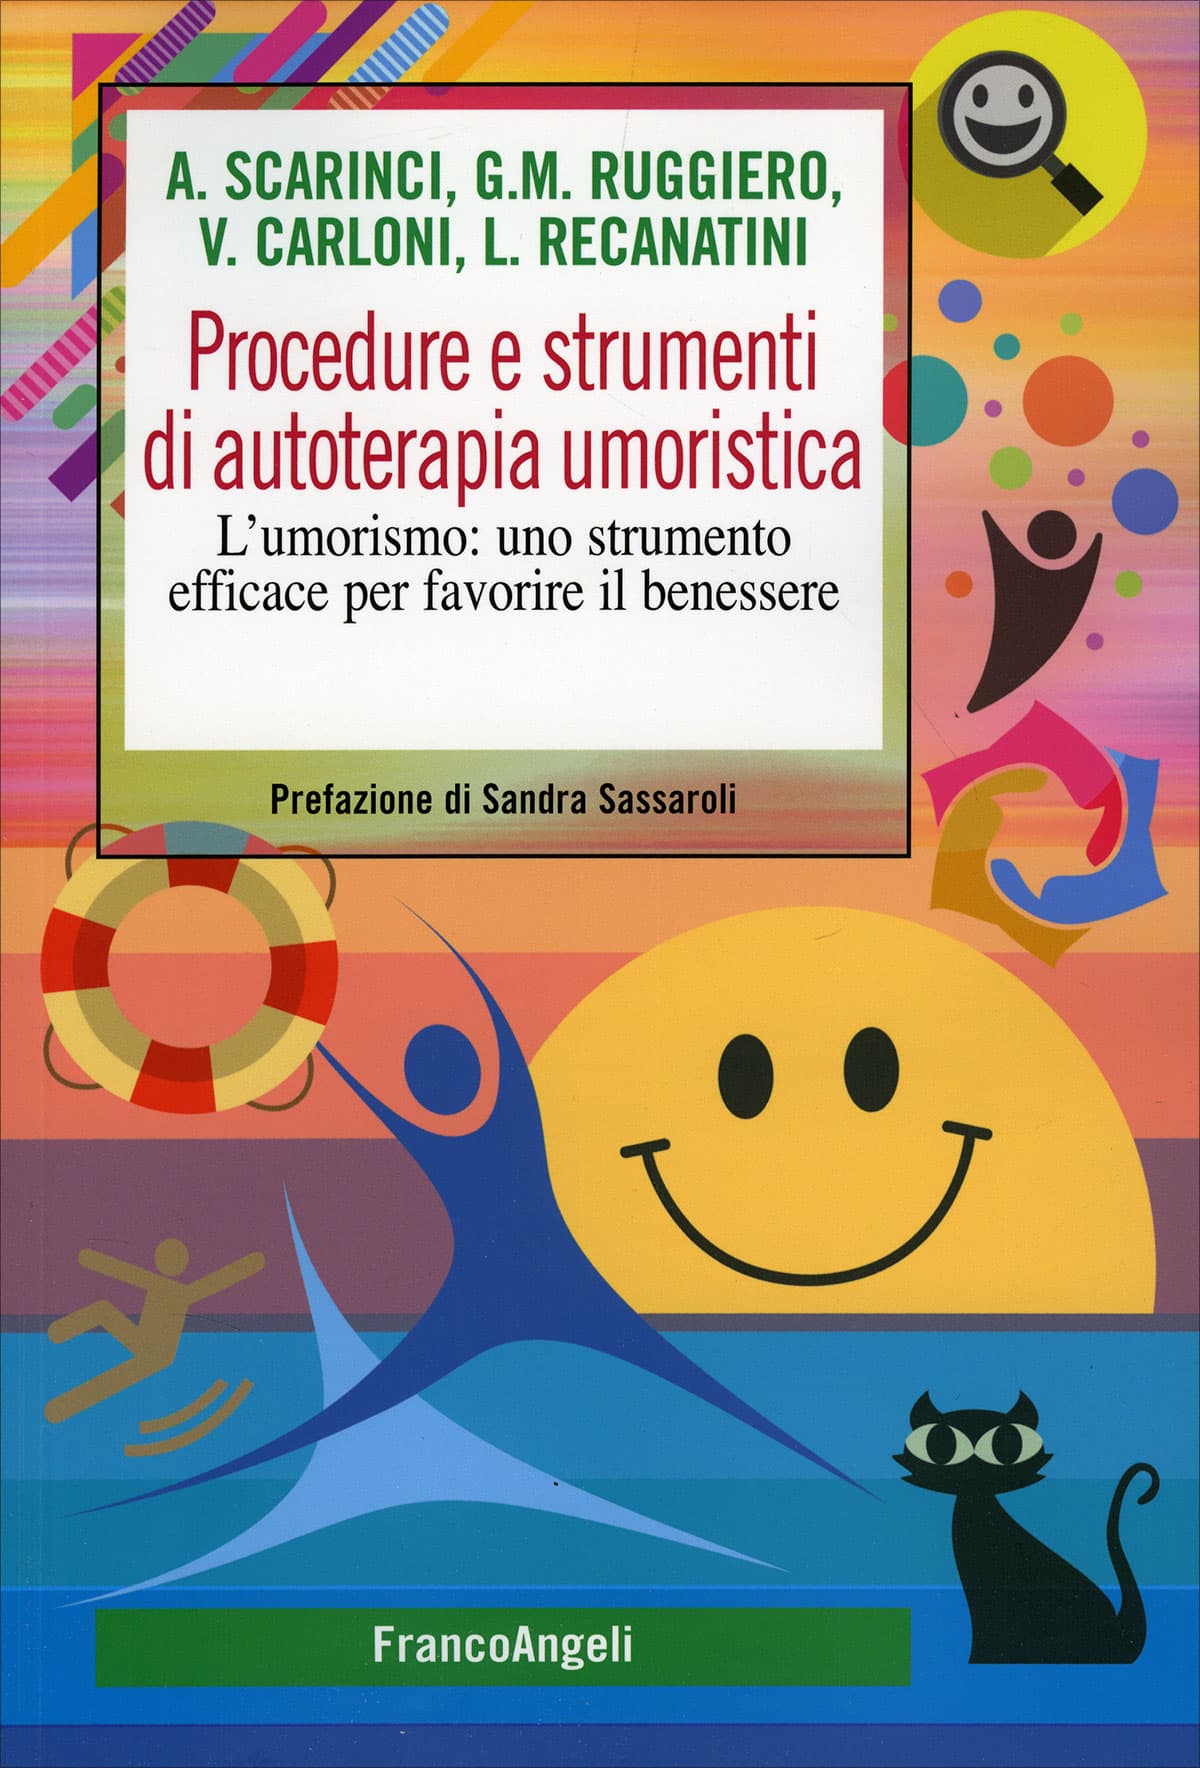 Procedure e strumenti di autoterapia umoristica (2022) – Recensione